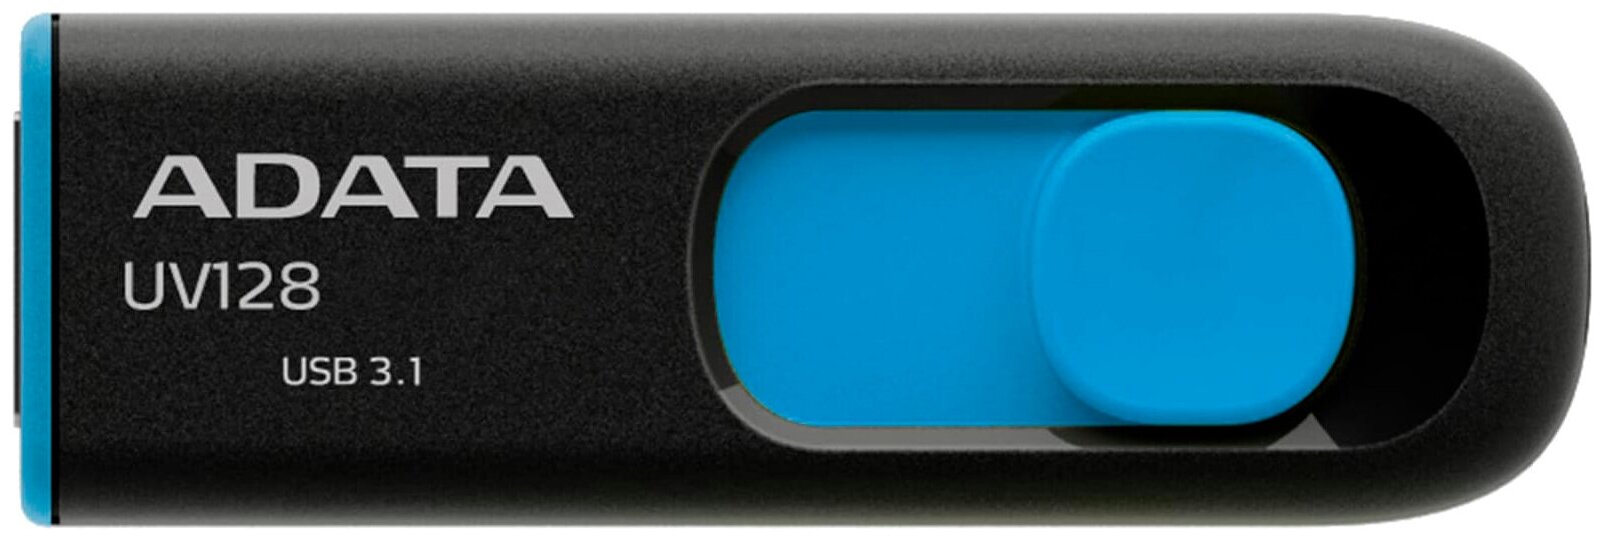 Накопитель USB 3.0 32GB ADATA DashDrive UV128 черный/голубой